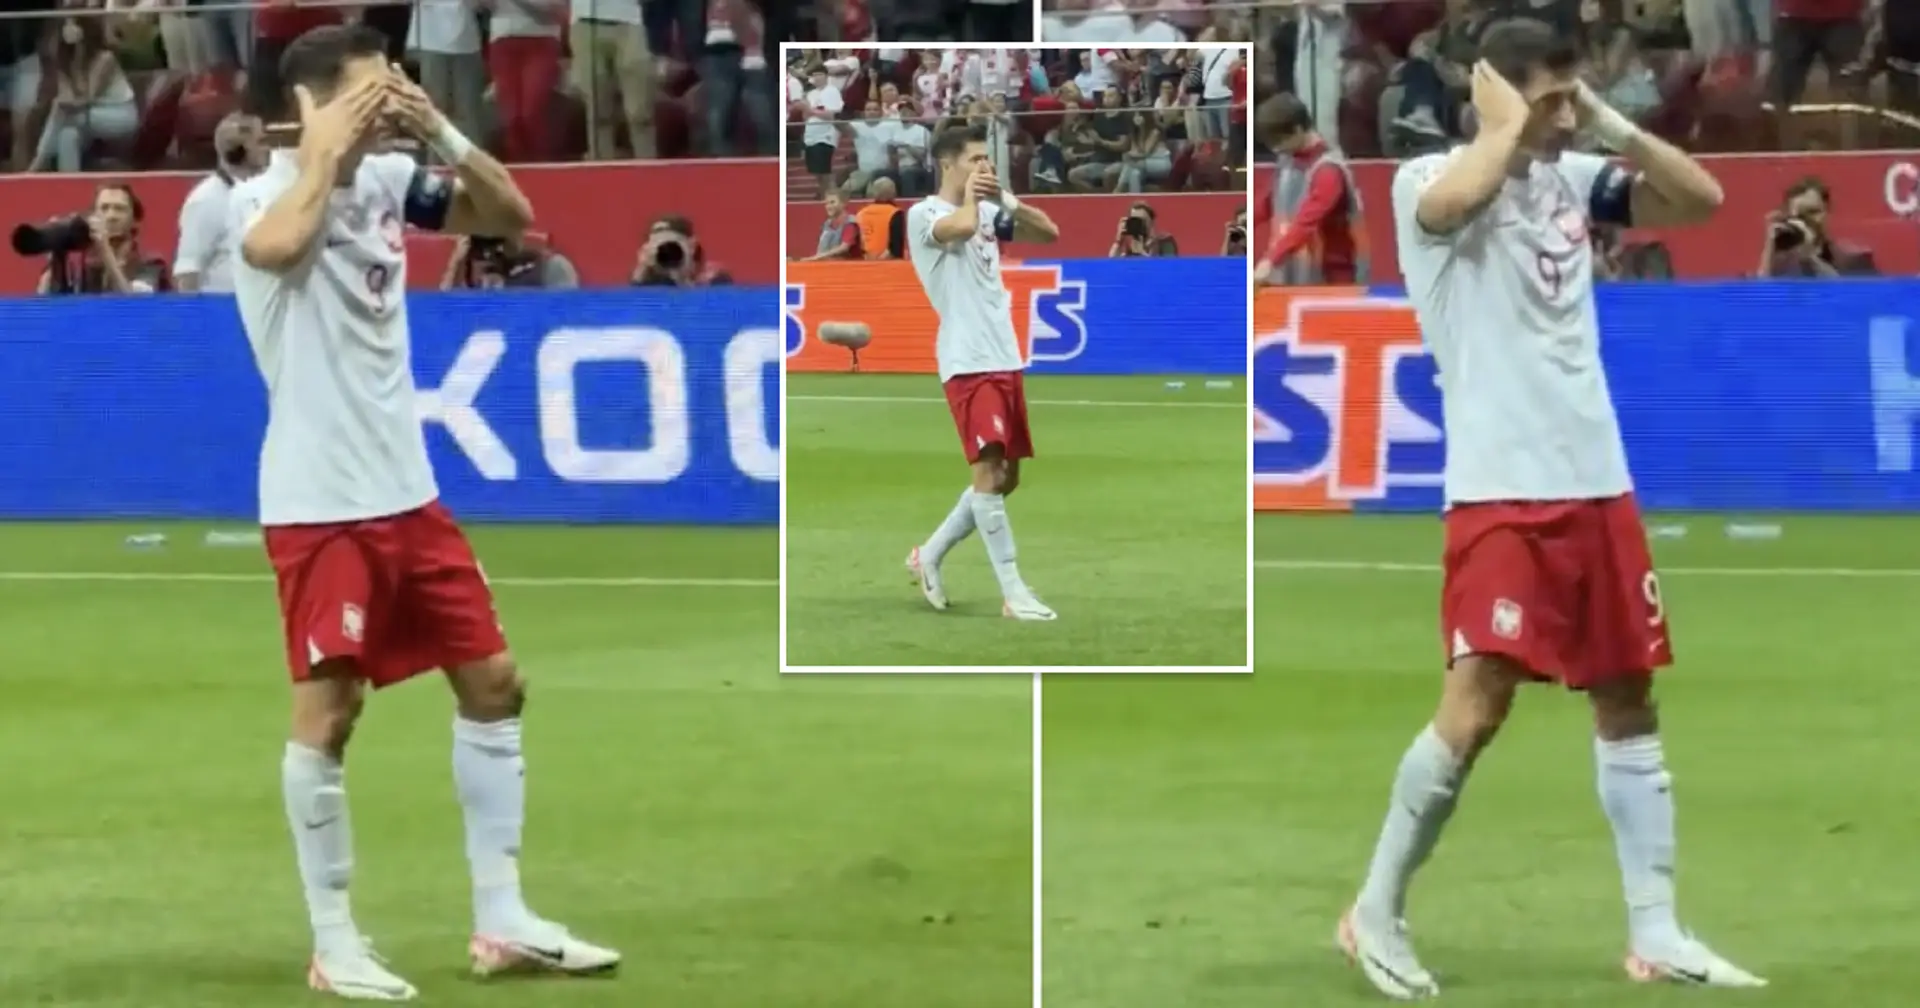 Lewandowski réalise une célébration de but inhabituelle – nous savons ce que cela signifie